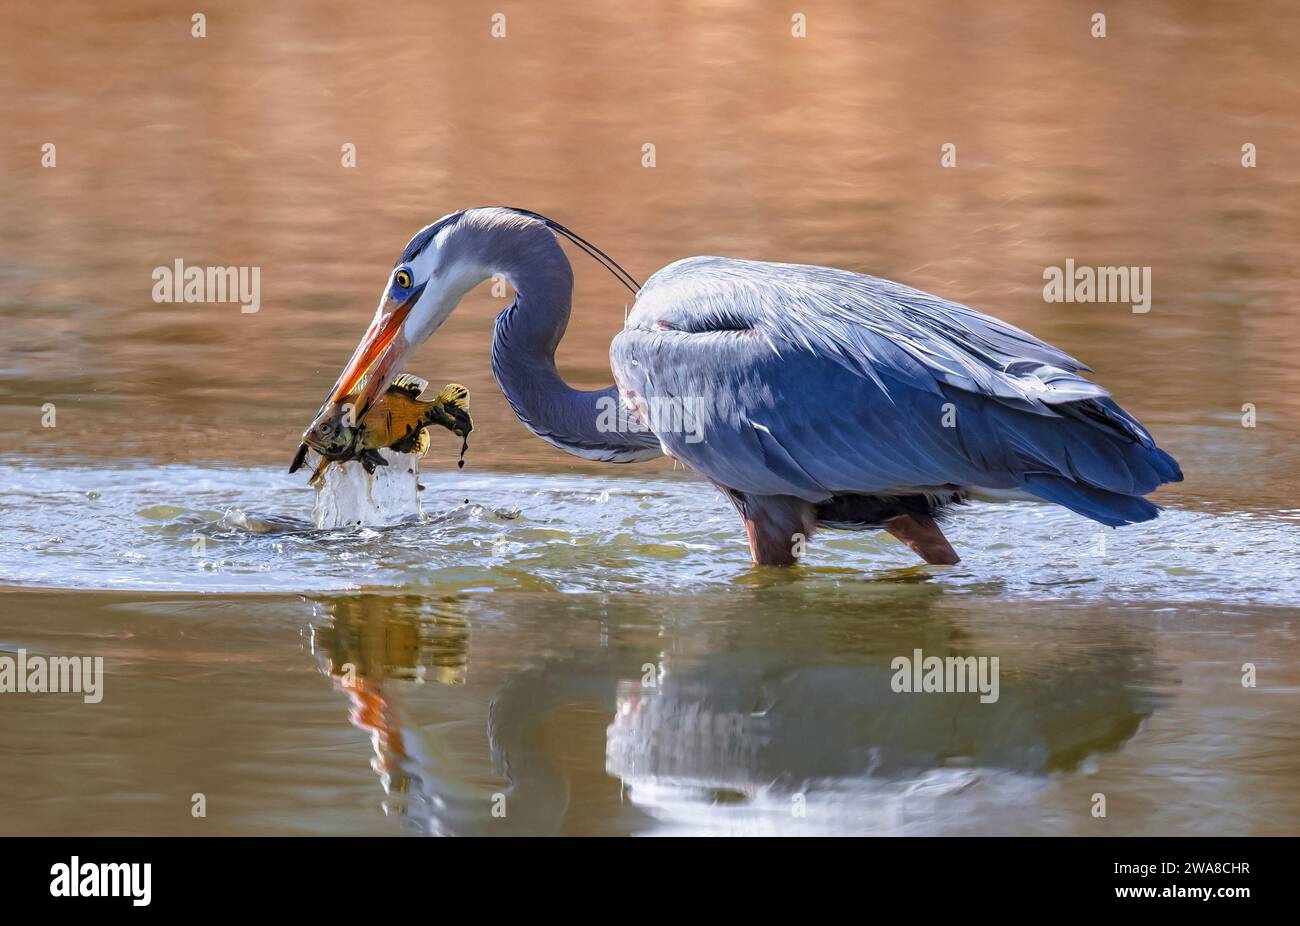 Una Gran Héroe Azul levanta un pez embarrado desprevenido fuera del agua mientras se alimenta en un estanque dorado poco profundo. Foto de stock